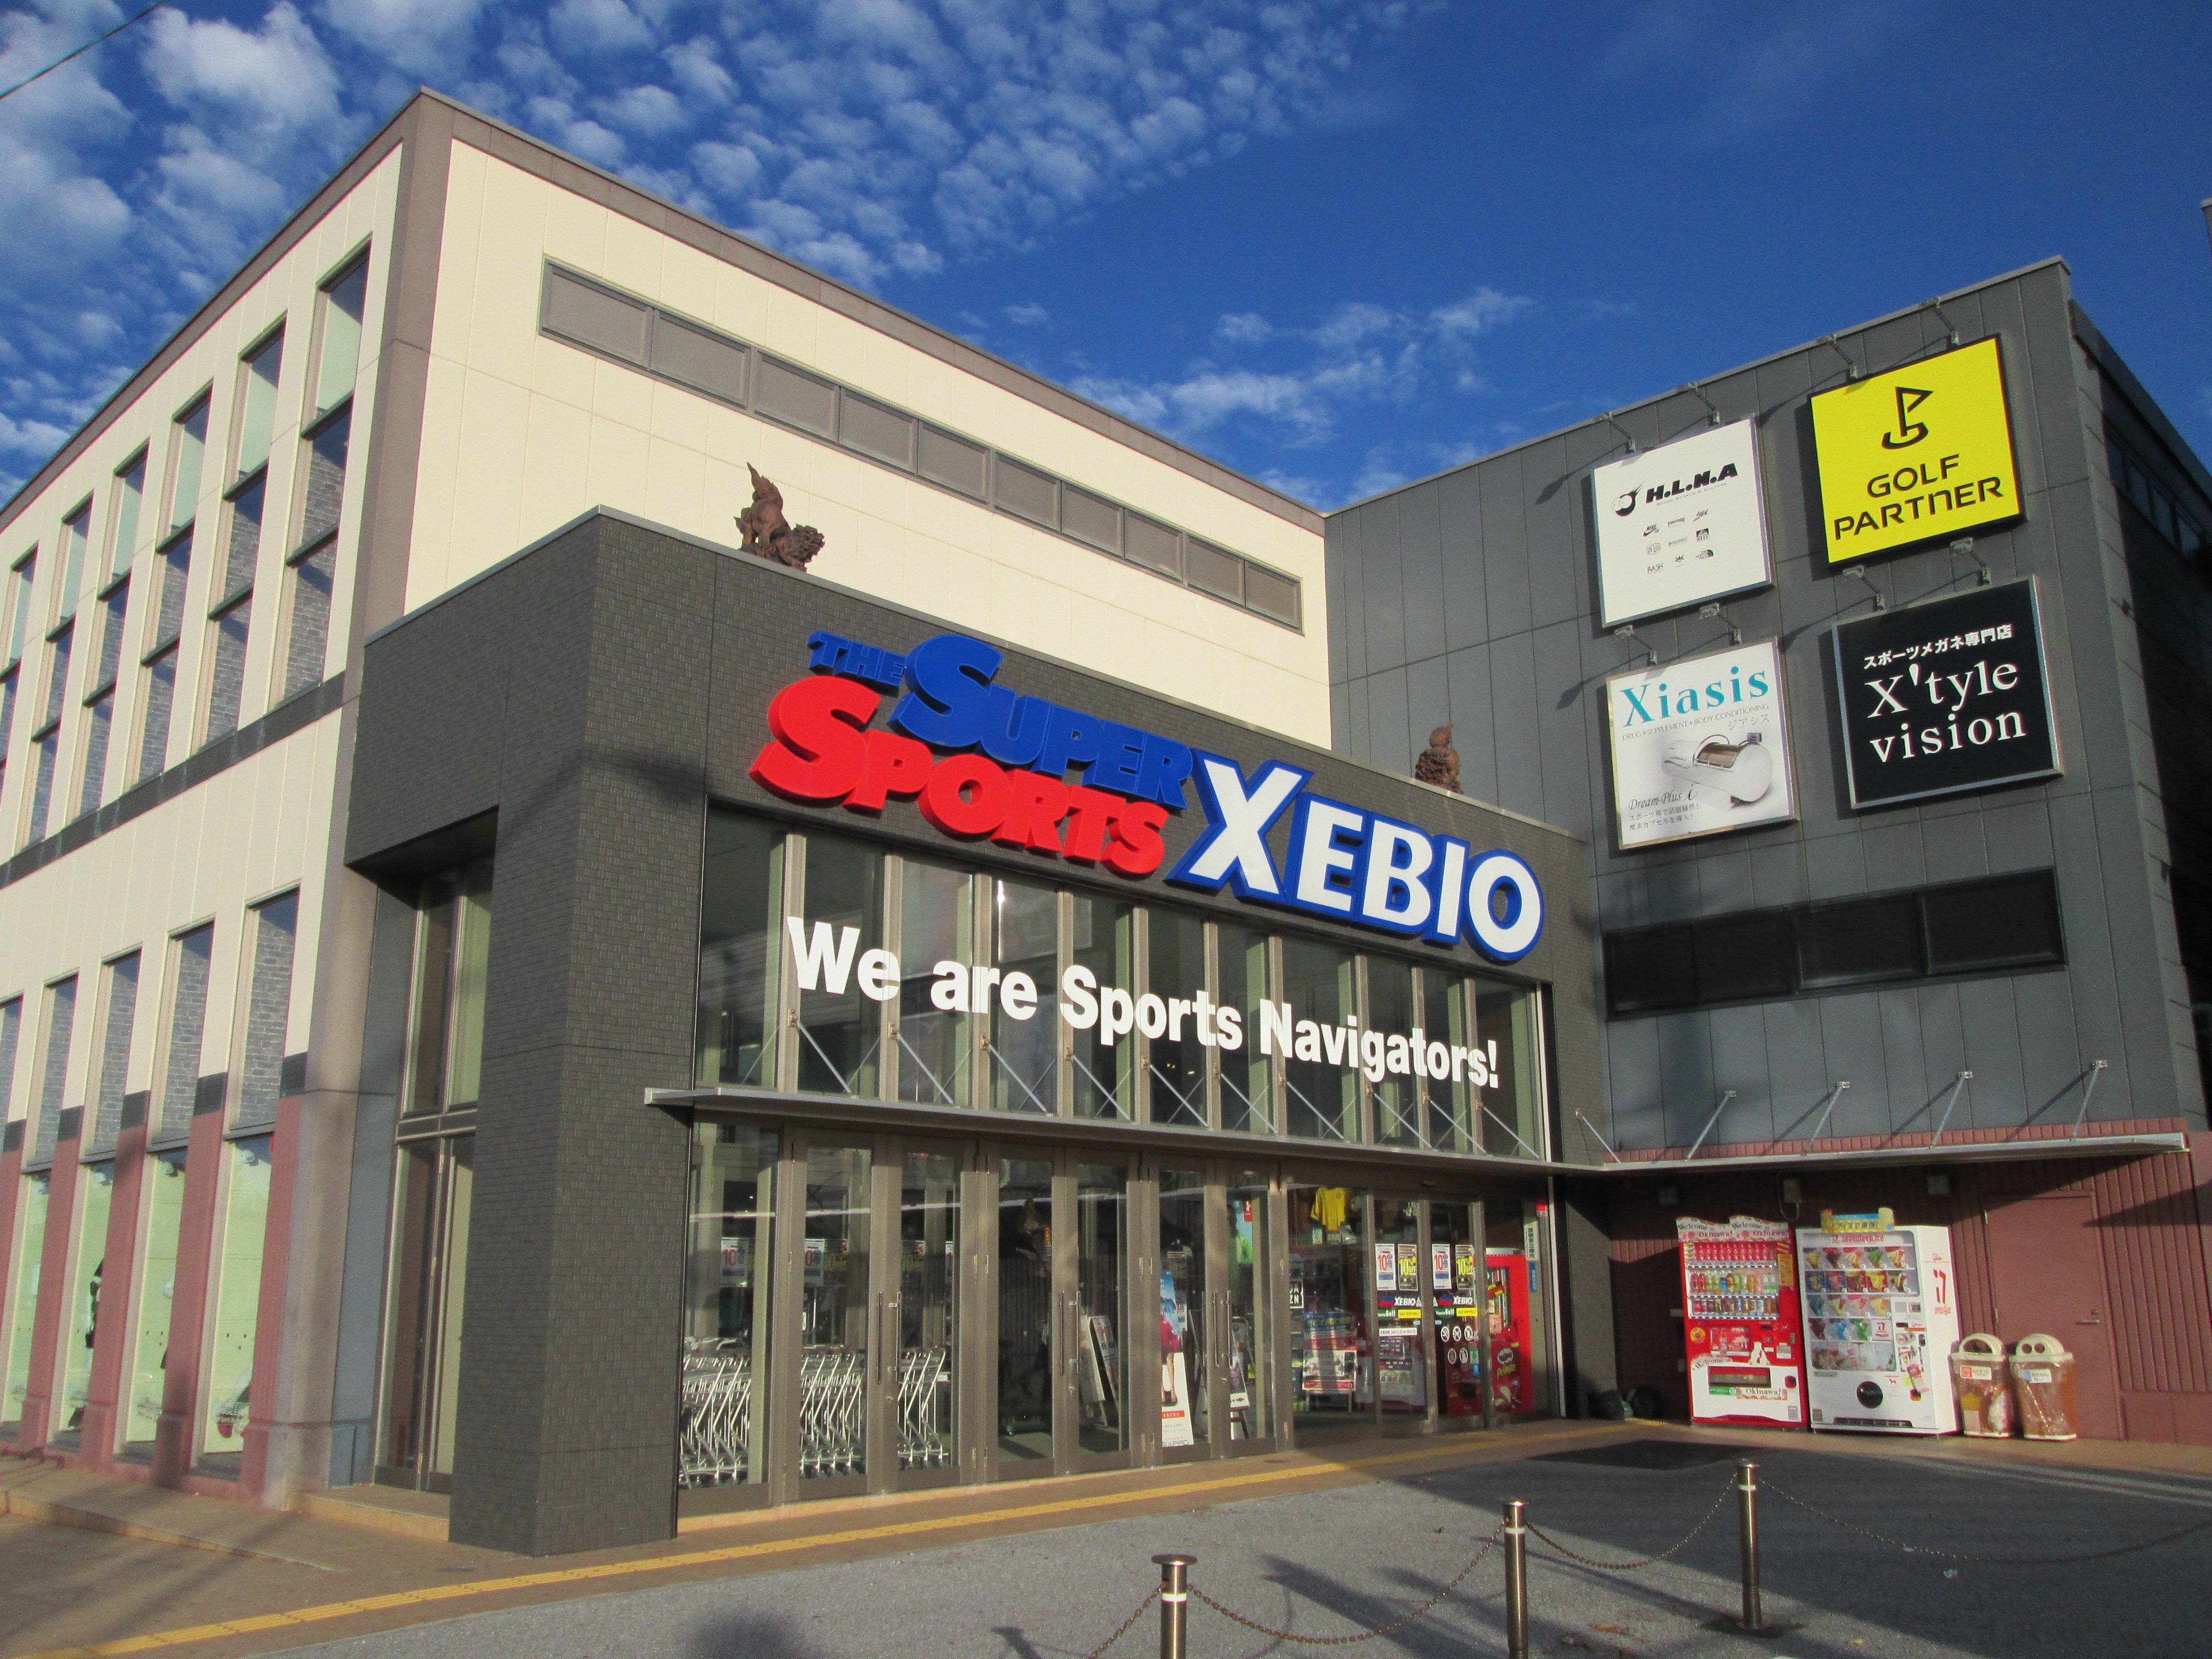 スーパースポーツゼビオ 宜野湾店 沖縄県 宜野湾市 Super Sports Xebio スーパースポーツゼビオ ゼビオスポーツ オフィシャルサイト